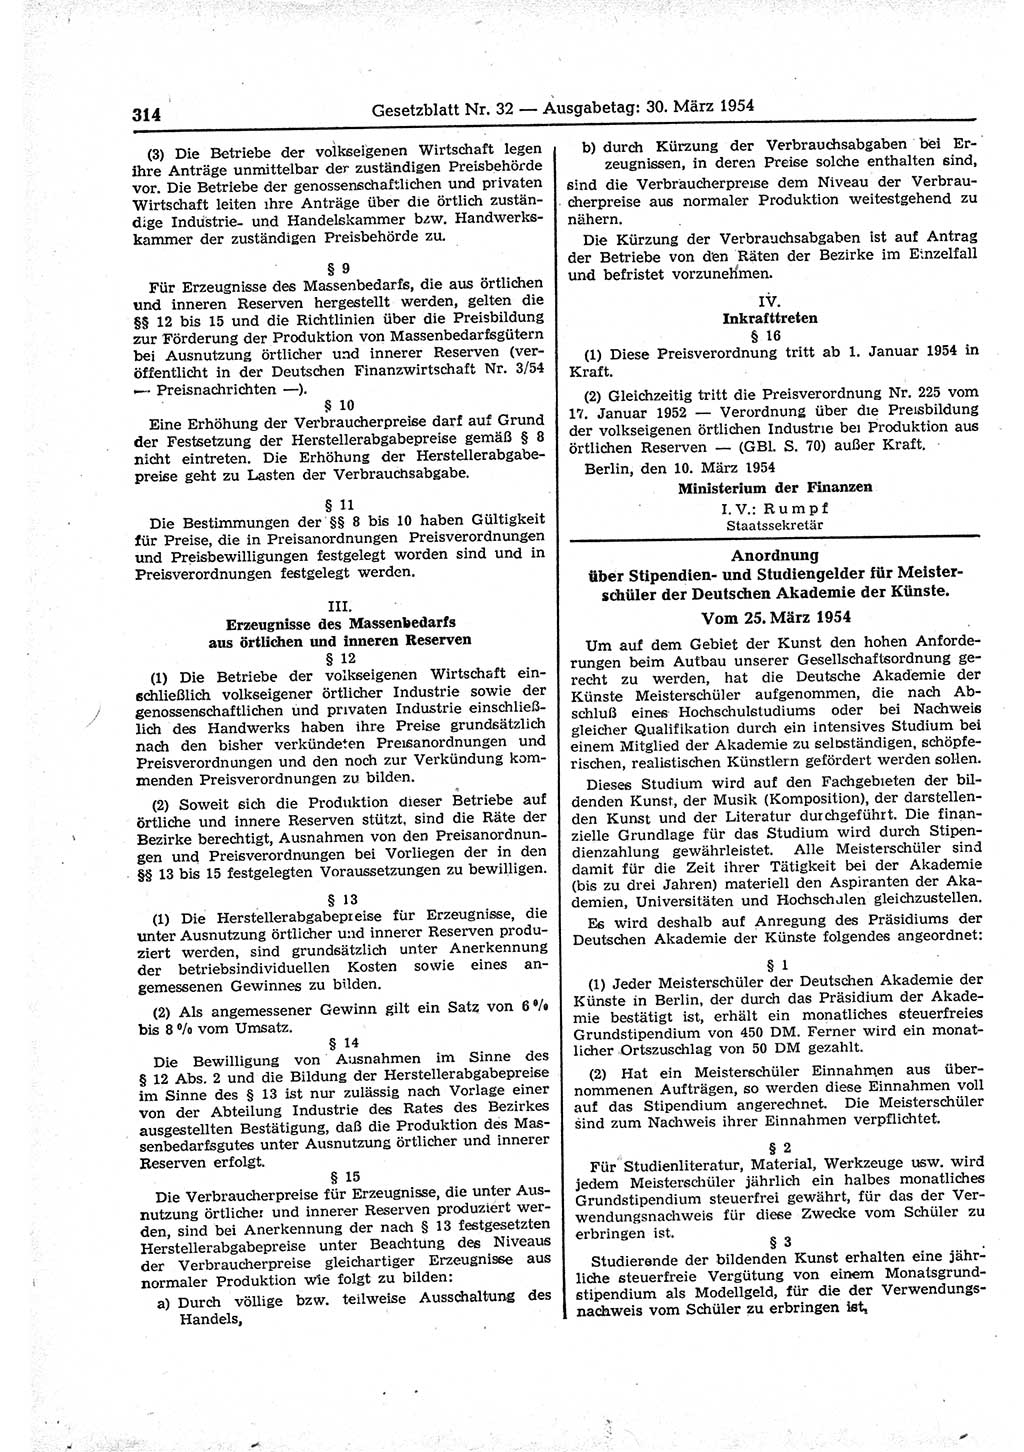 Gesetzblatt (GBl.) der Deutschen Demokratischen Republik (DDR) 1954, Seite 314 (GBl. DDR 1954, S. 314)